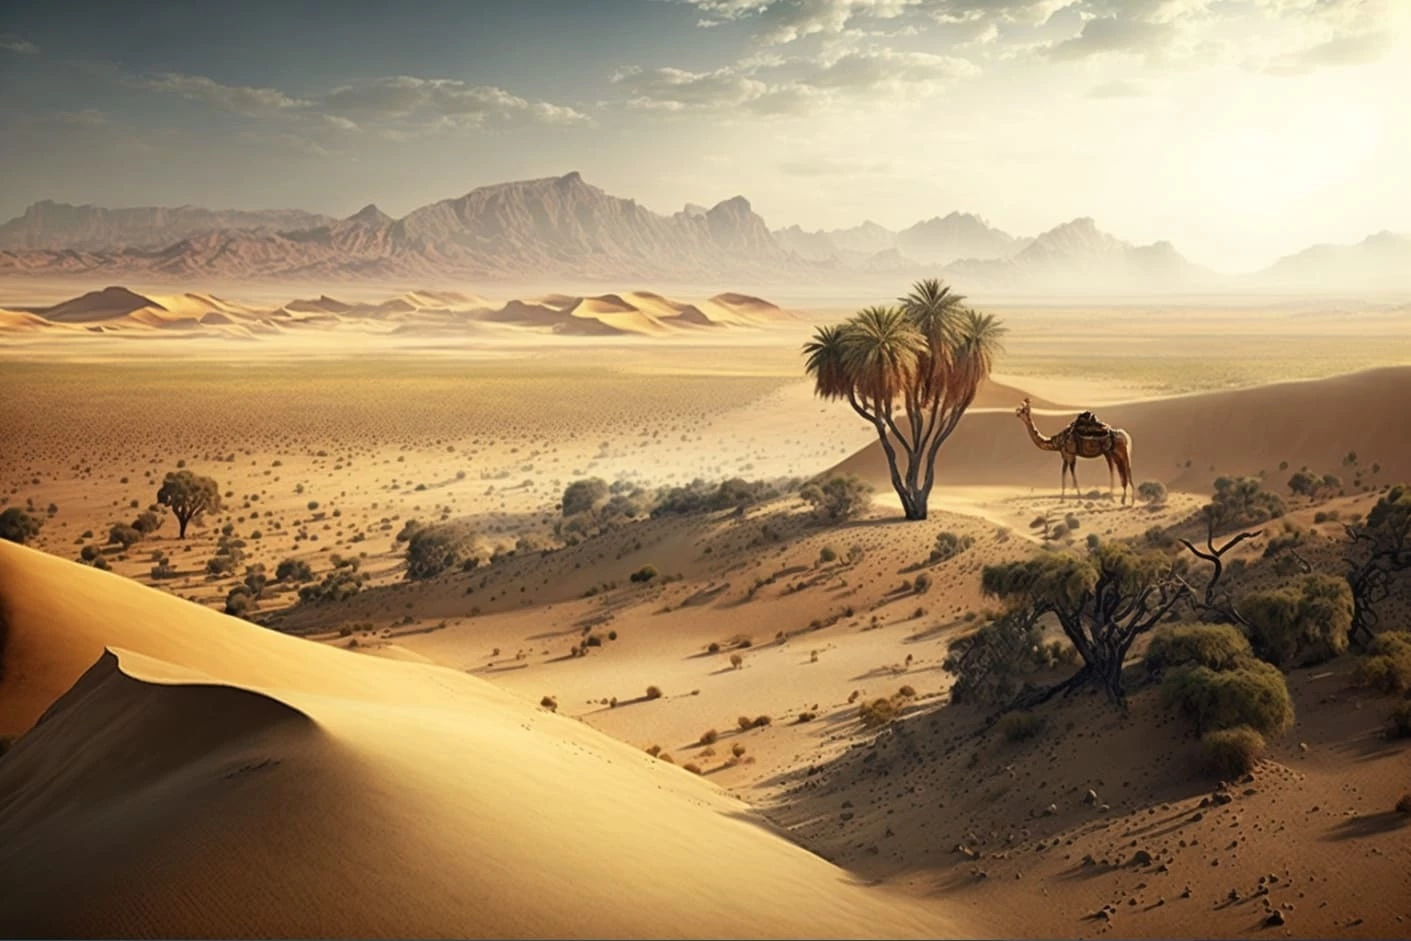  фотография бескрайнего пустынного пейзажа